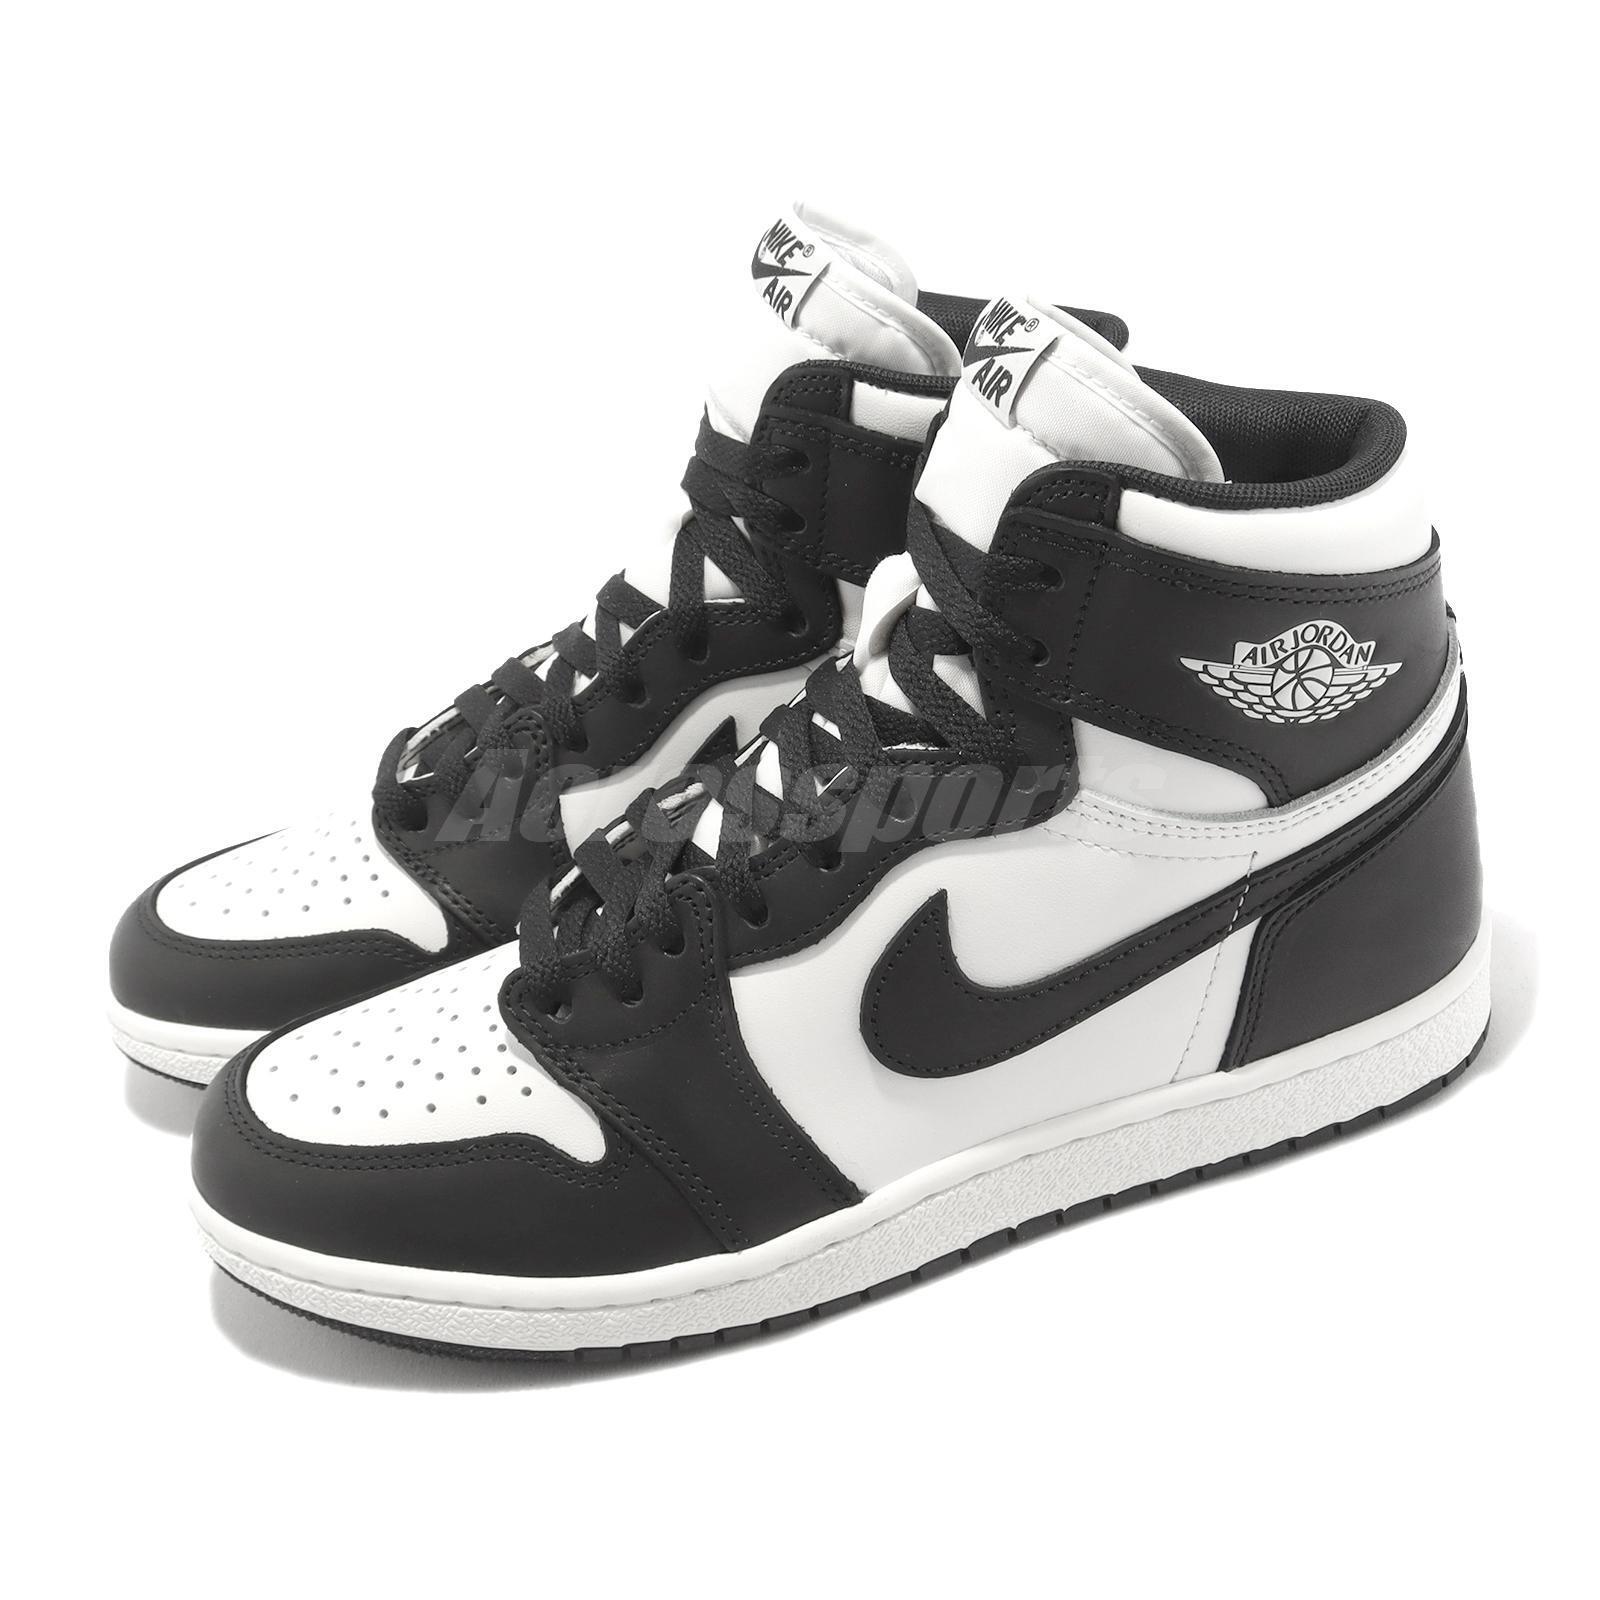 Nike Air Jordan 1 Retro High 85 OG Black White 2023 Men AJ1 Casual BQ4422- 001 | eBay